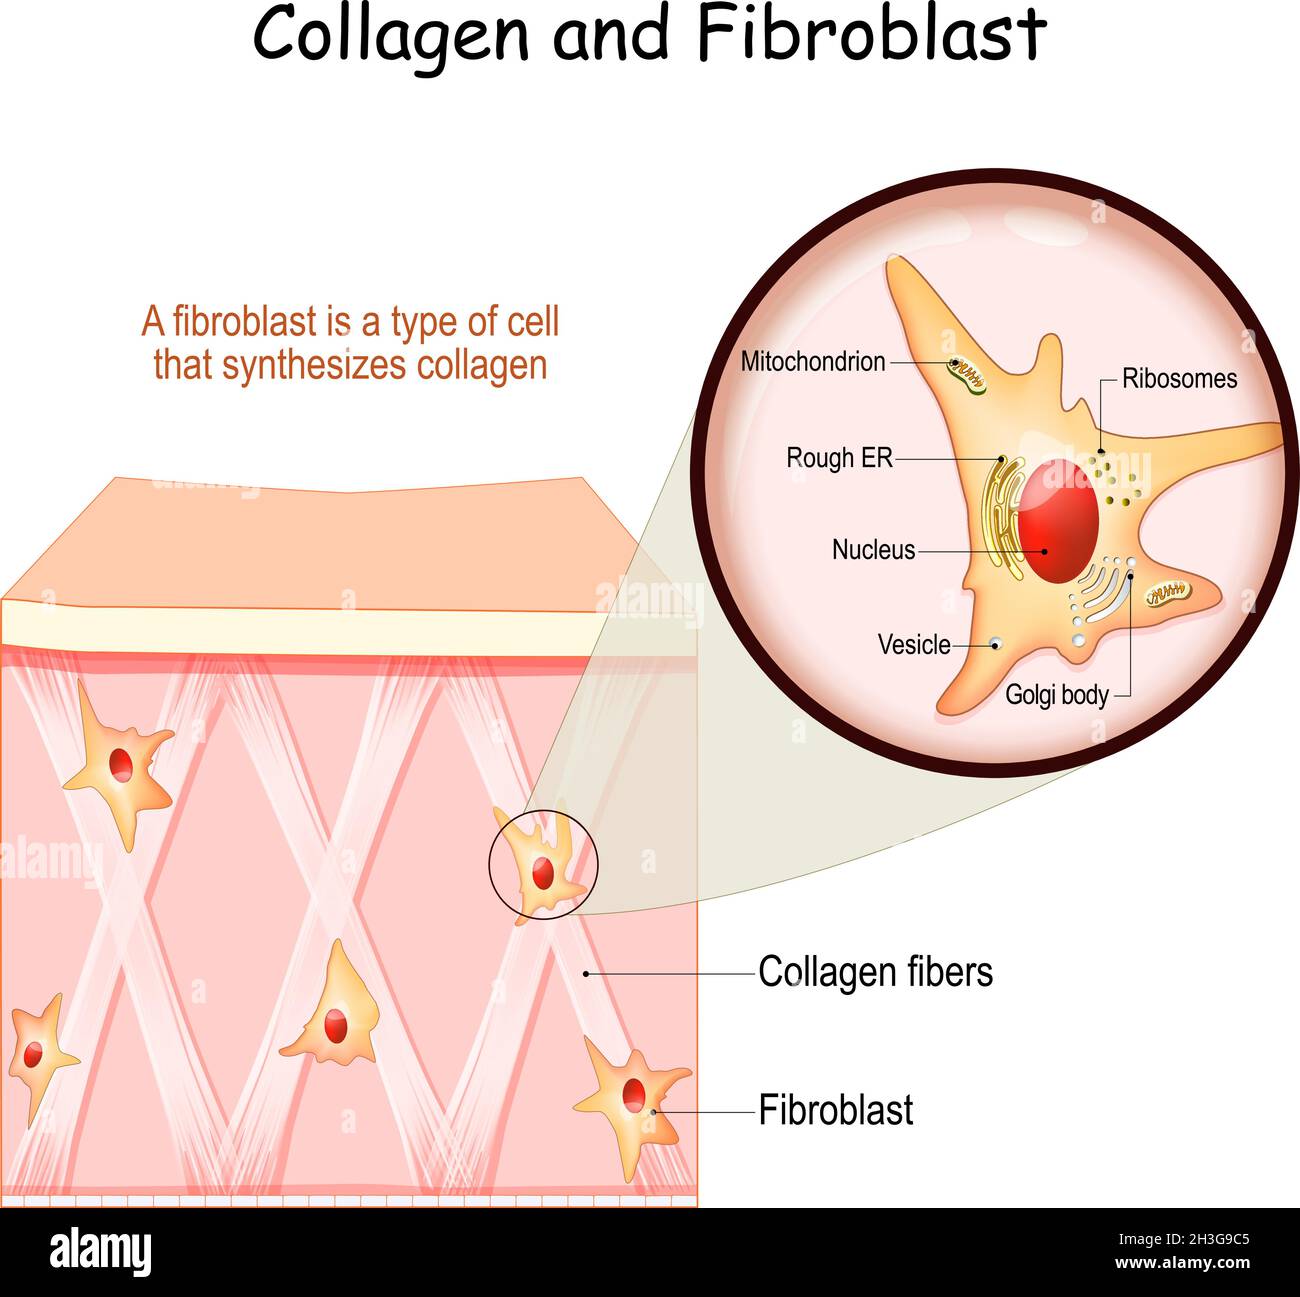 Collagene e fibroblasti. Pelle con fibre di collagene e cellule che sintetizzano collagene. Primo piano della struttura dei fibroblasti Illustrazione Vettoriale